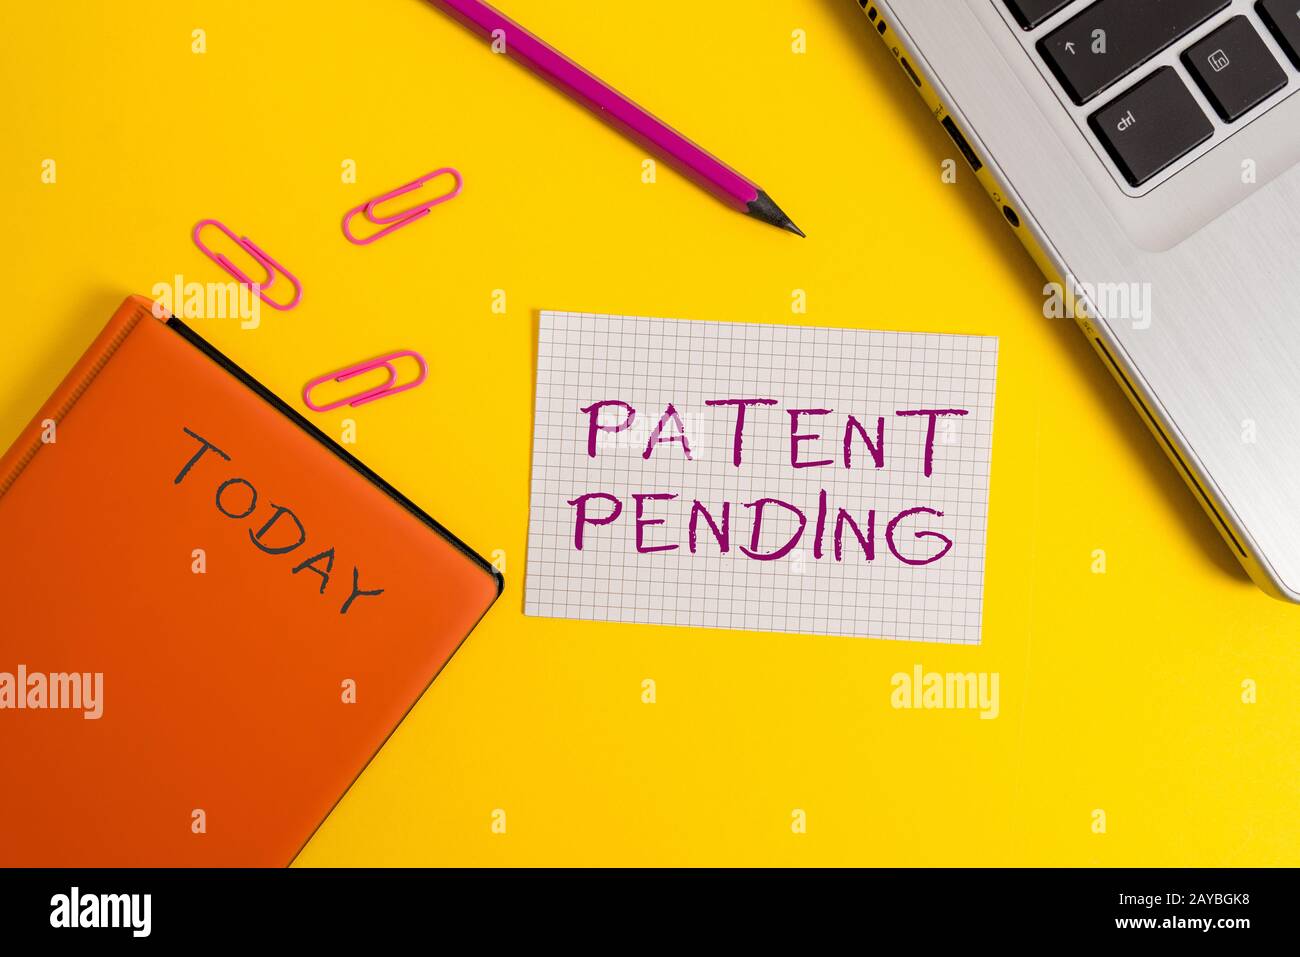 Handschrifterschreiben Patent ausstehend. Konzept bedeutet, dass die Anfrage bereits eingereicht wurde, aber noch nicht gewährt wurde, um Schutz zu gewährleisten Laptop cl Stockfoto